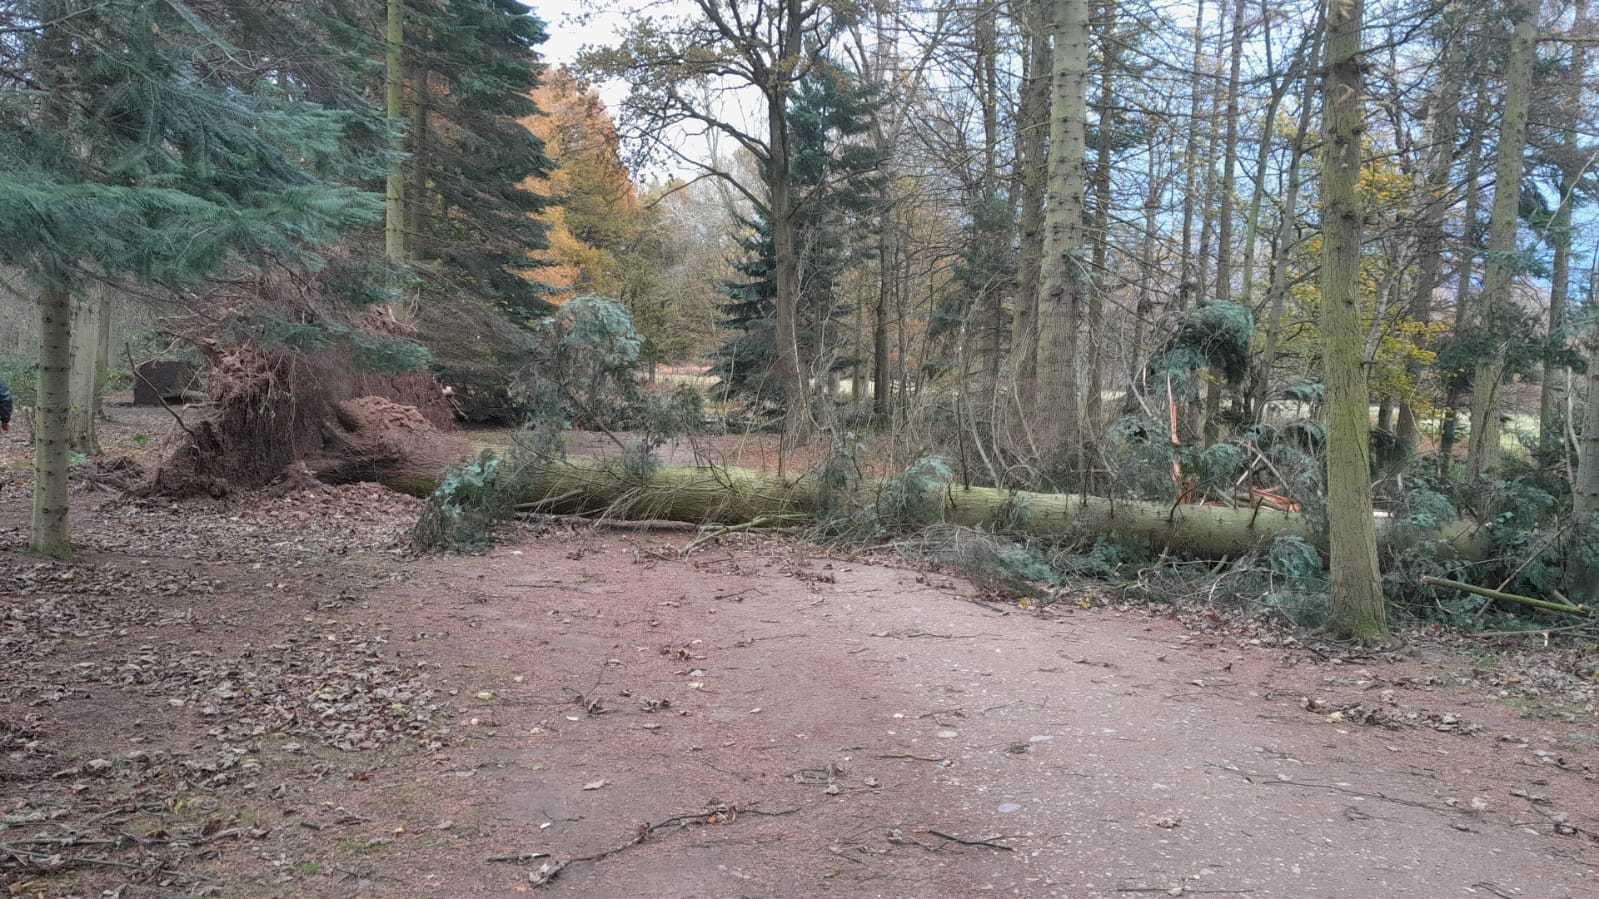 Storm damage at Bodnant Gardens. Image: National Trust/Facebook